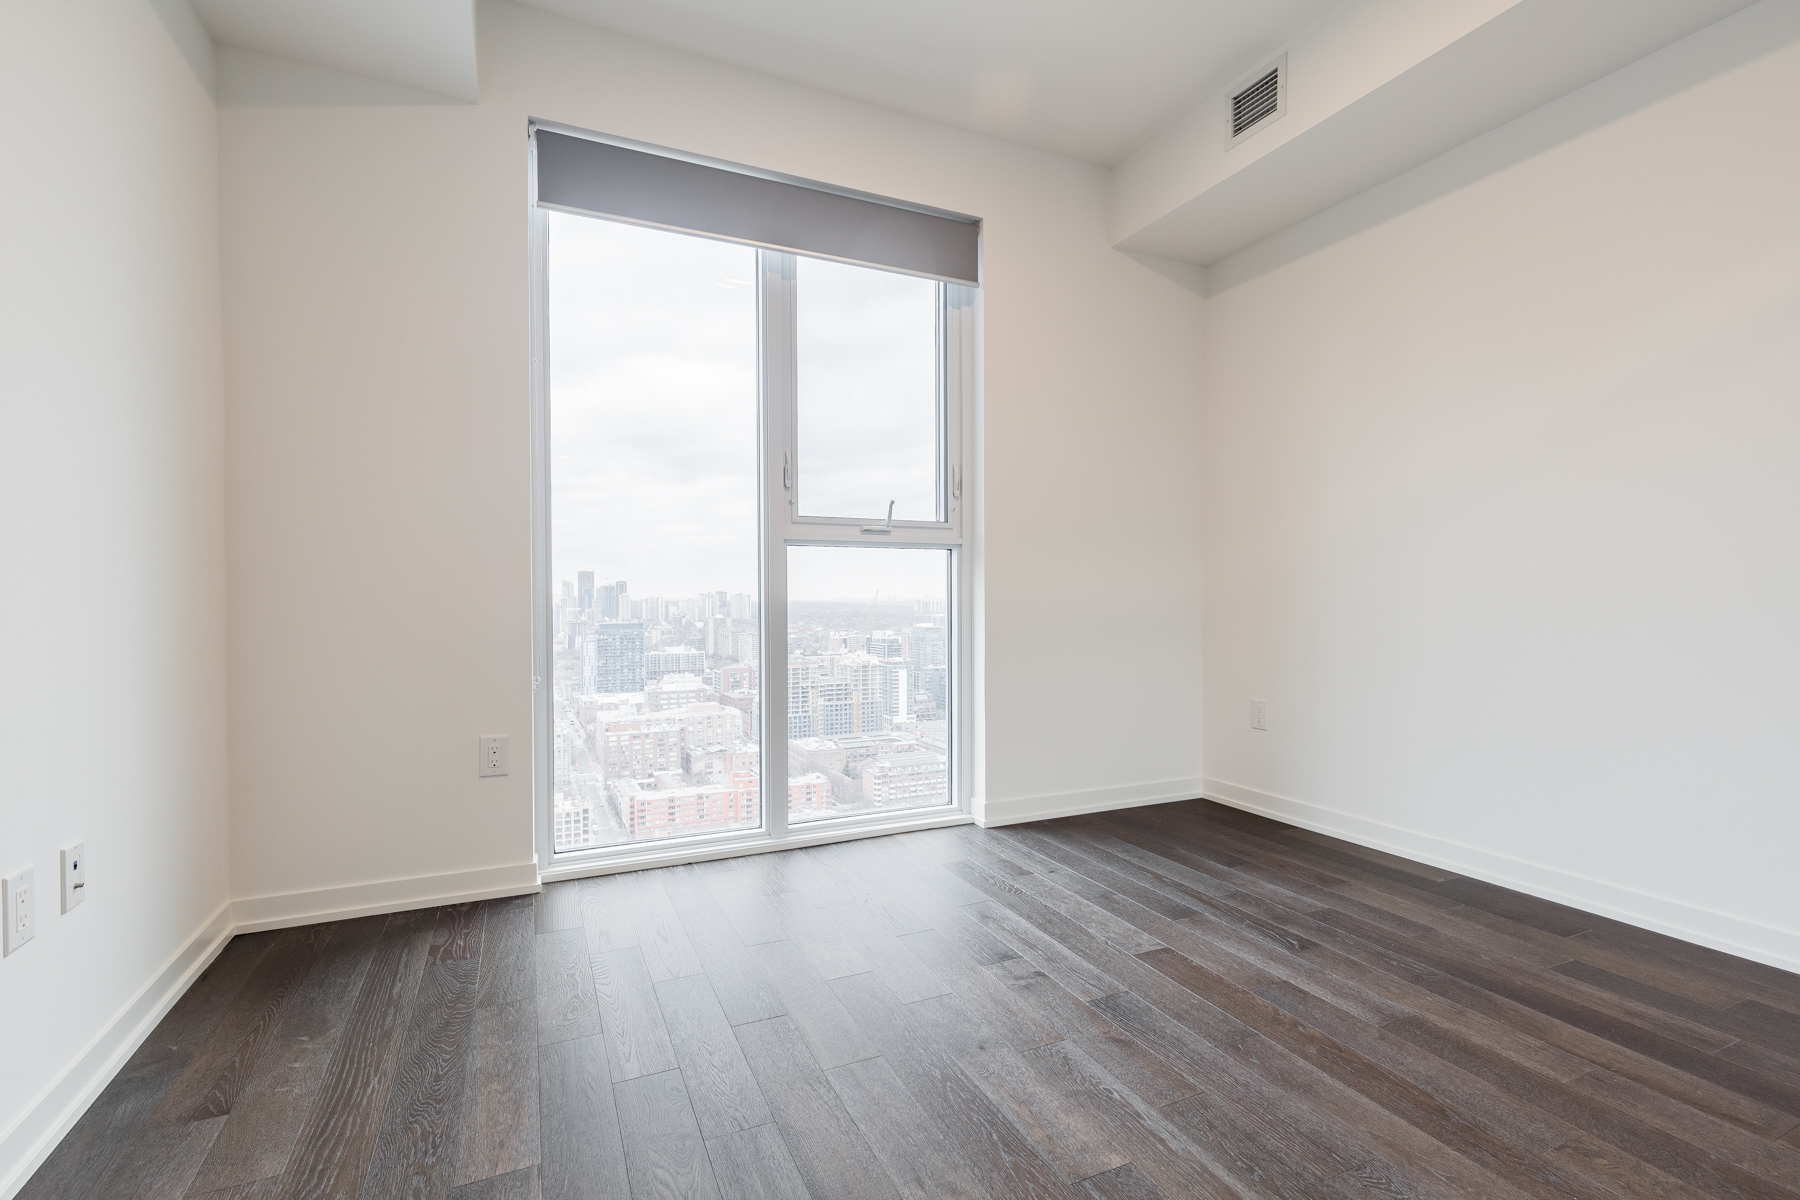 Photo of empty condo bedroom with hardwood floors and big window.